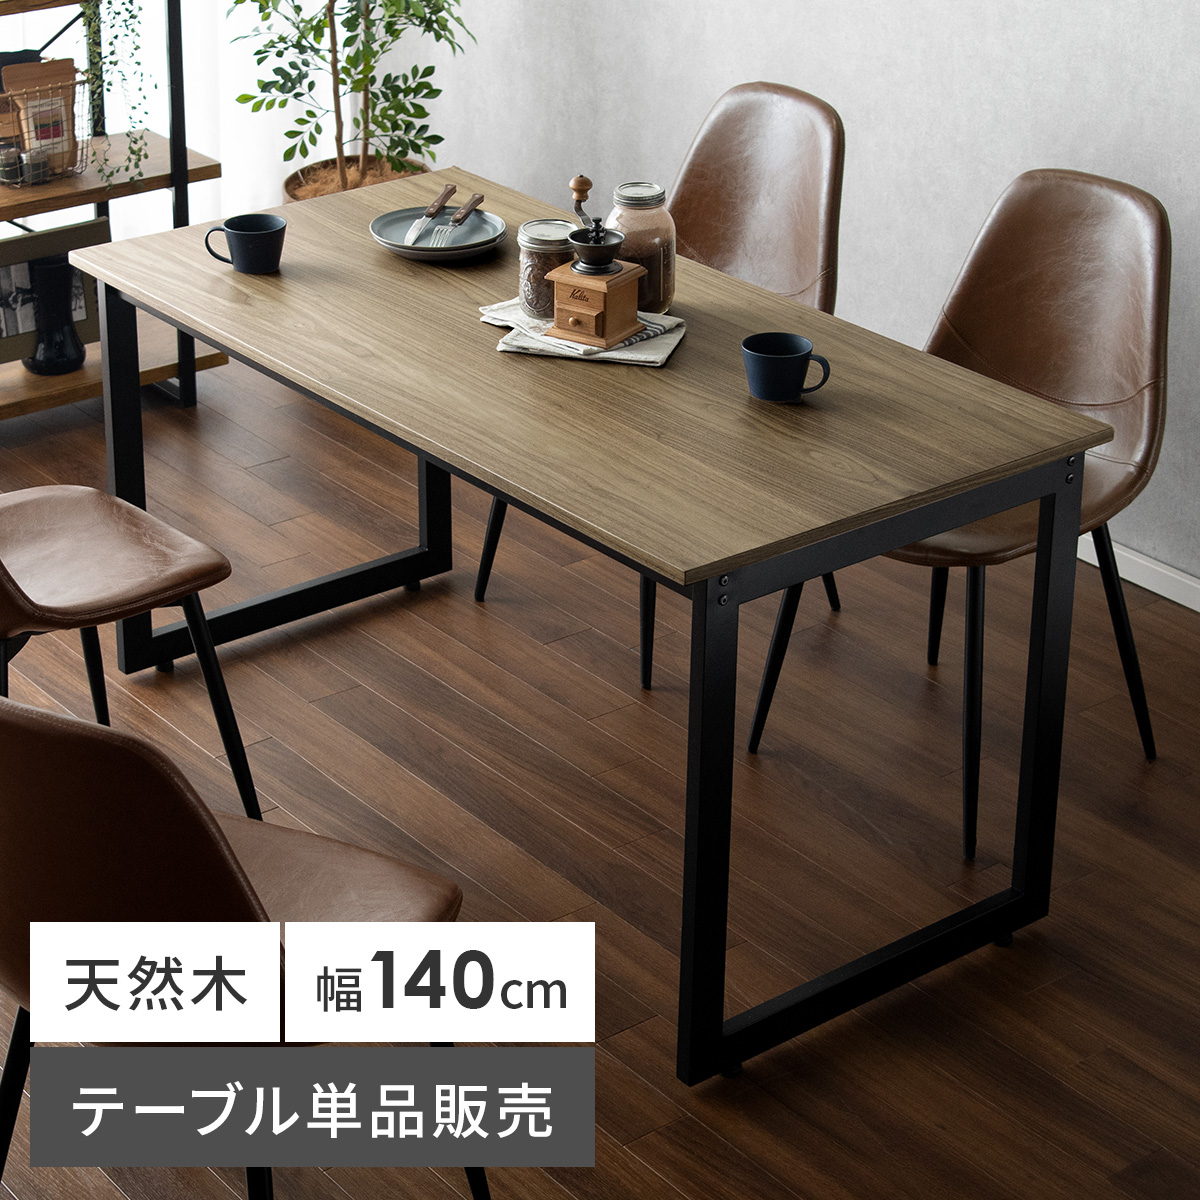 ダイニングテーブル Velde(ヴェルデ) 140cm幅タイプ 【公式】 エア・リゾーム インテリア・家具通販